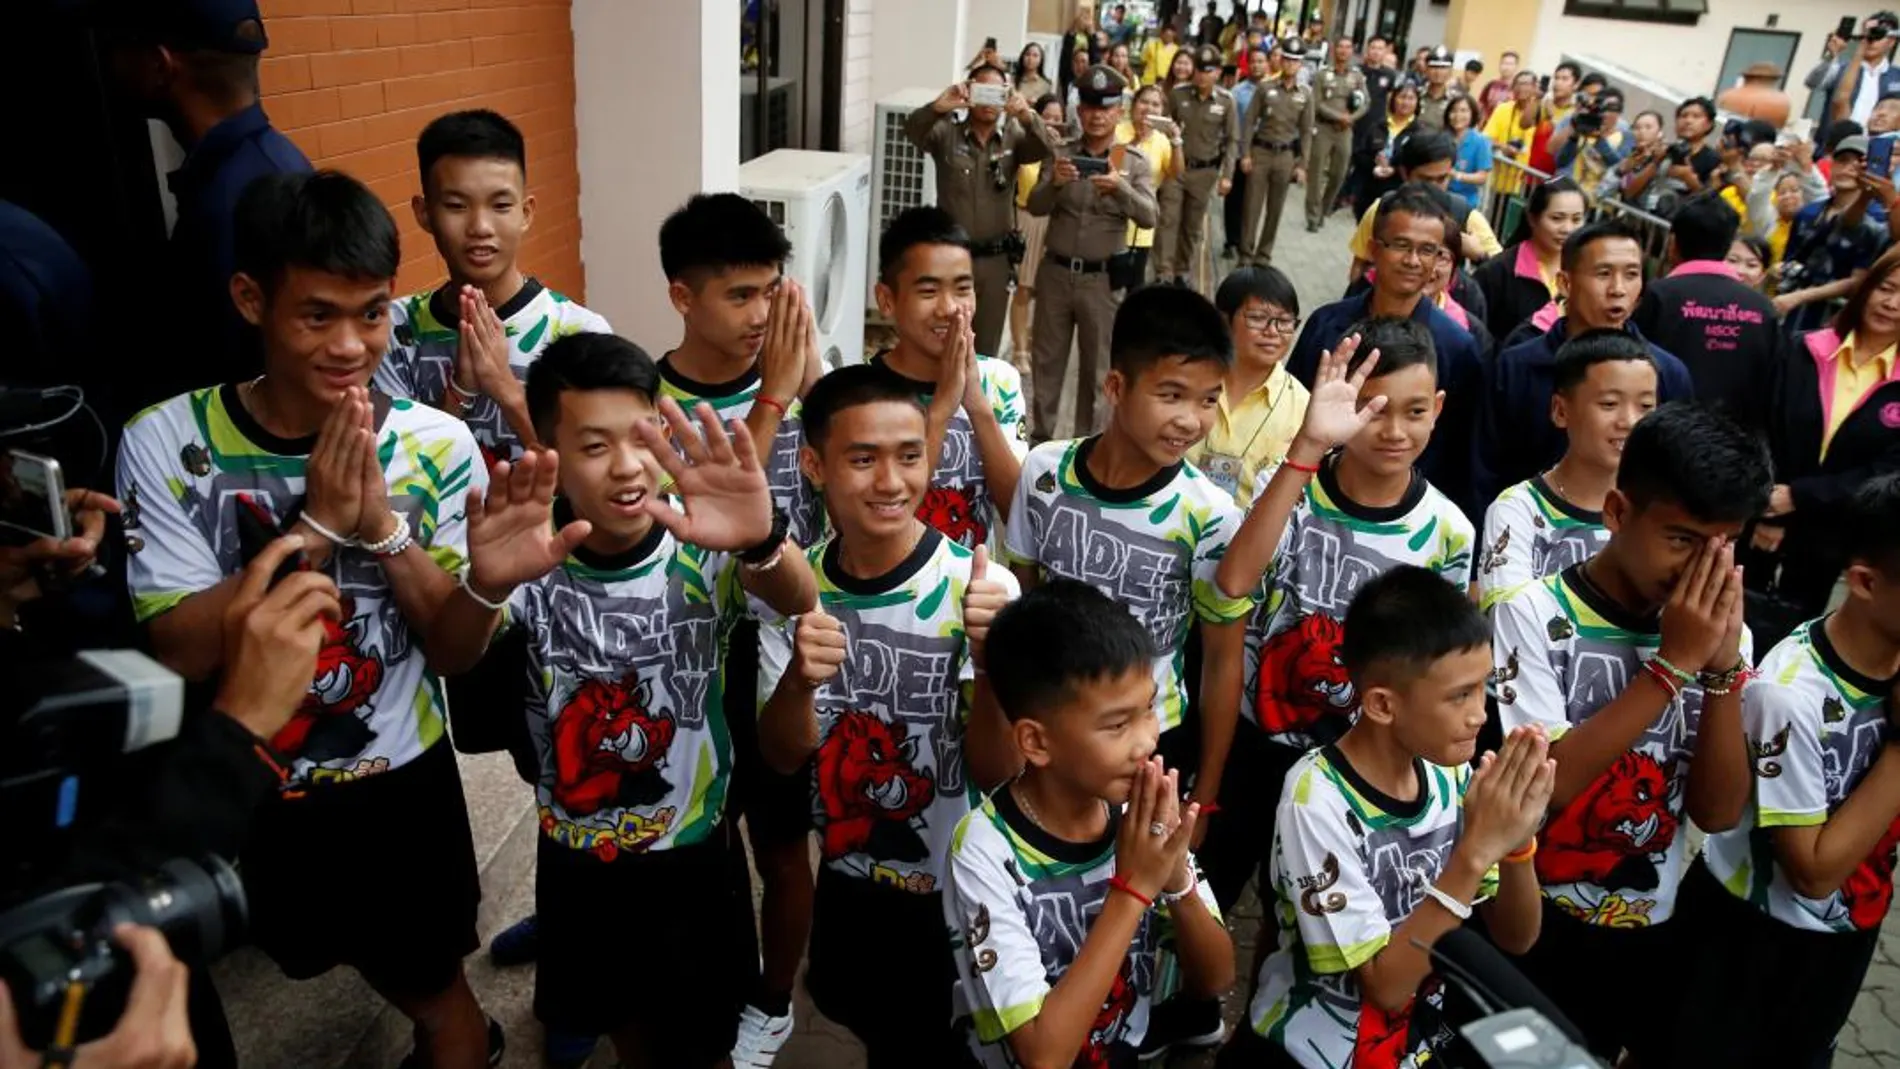 Los doce chicos y su entrenador antes de ofrecer una rueda de prensa / Foto: Reuters